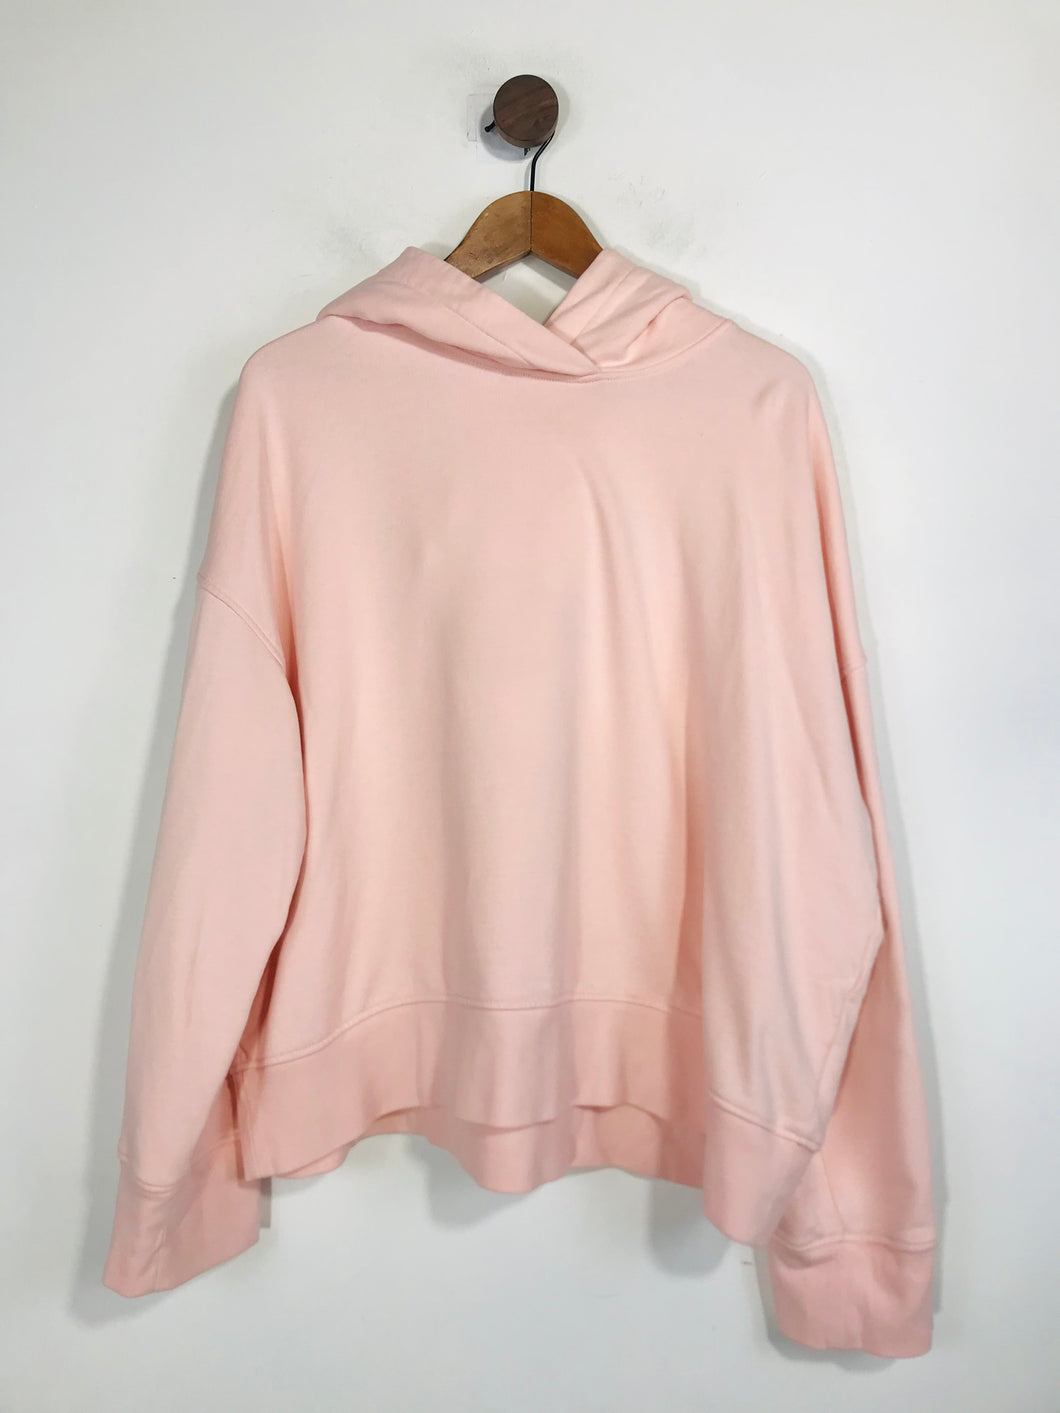 Arket Women's Cotton Hoodie | M UK10-12 | Pink